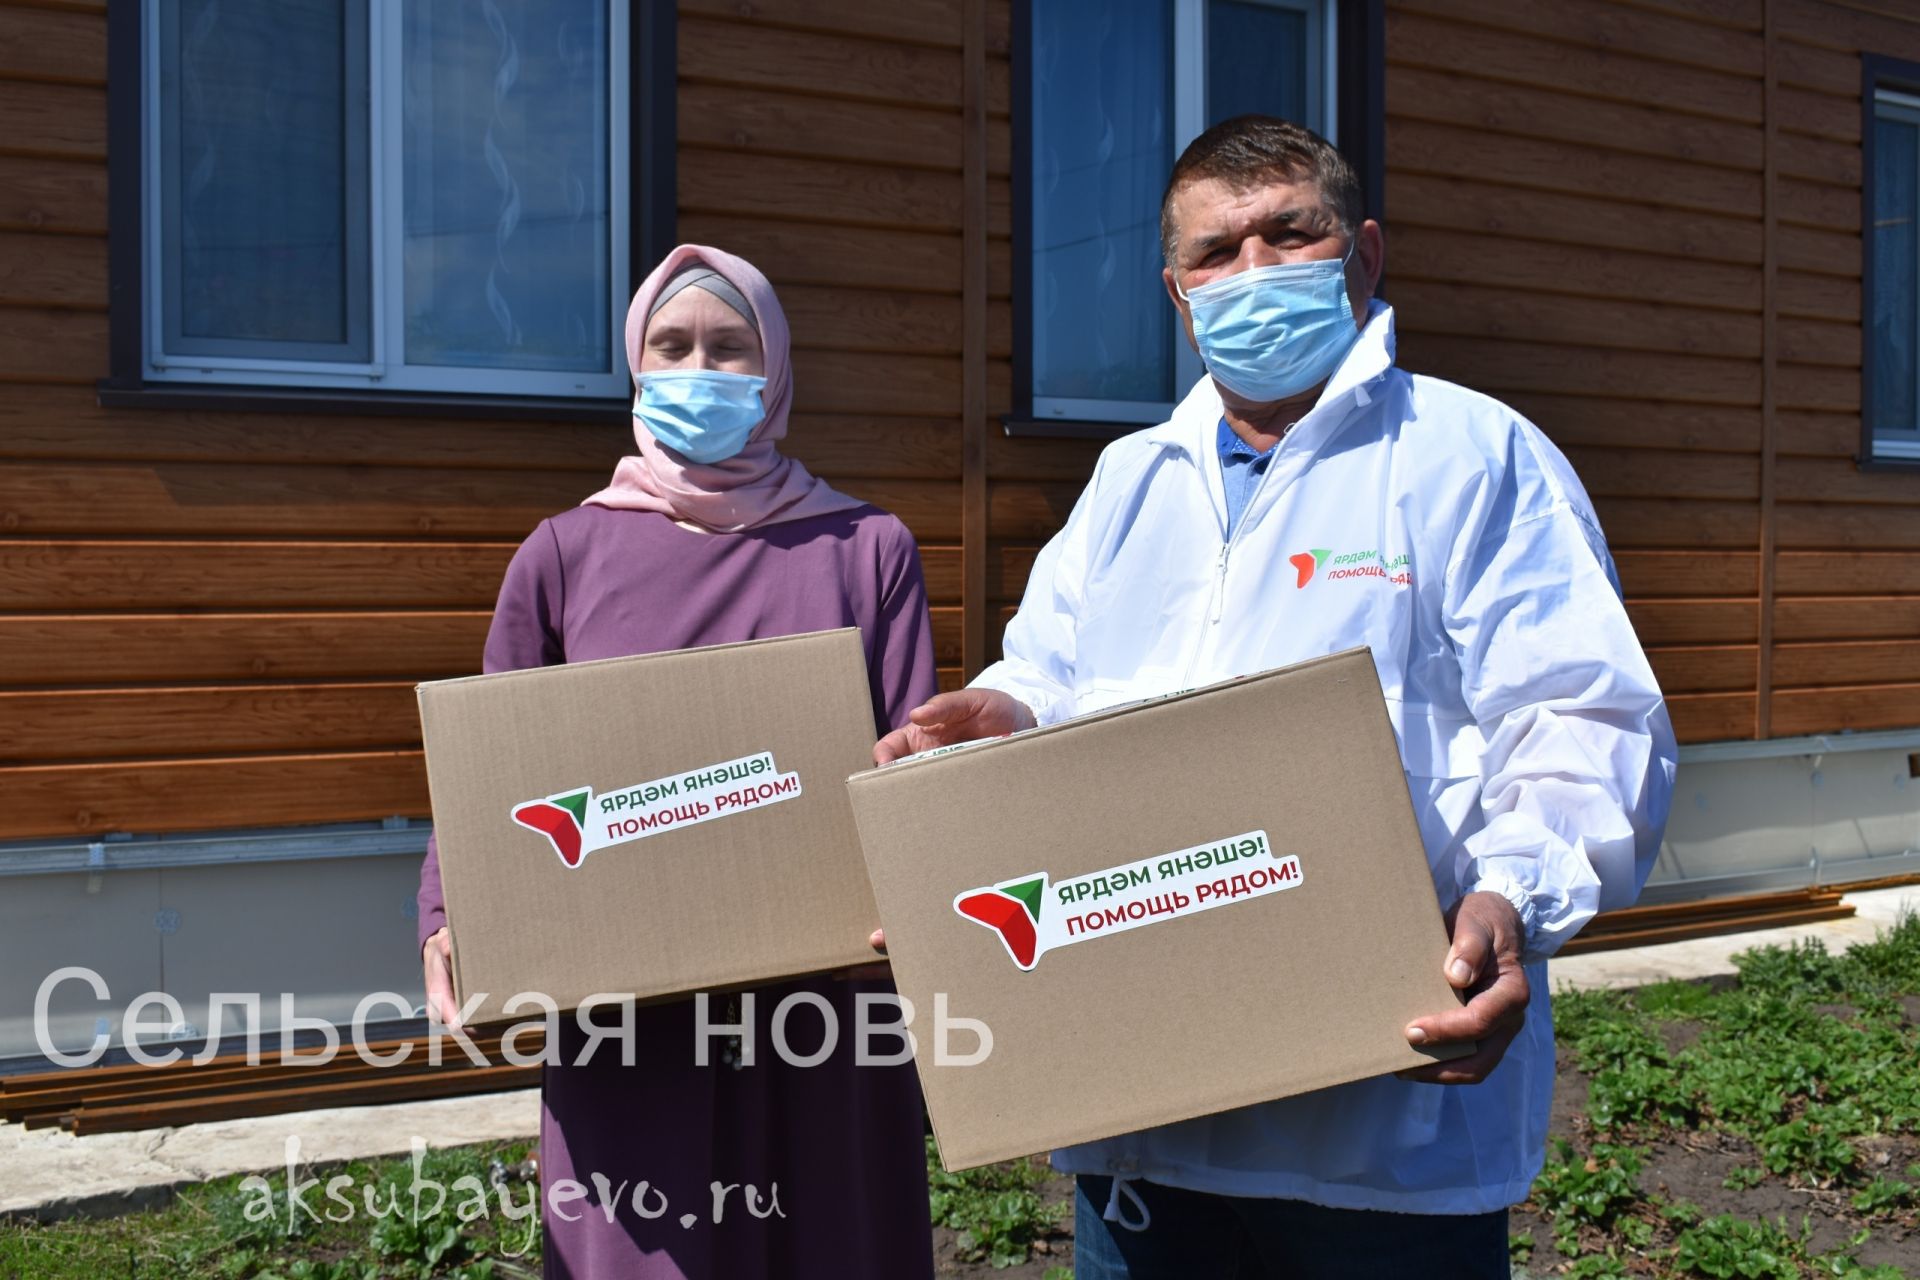 Аксубаевцам вручат 550 продуктовых наборов в рамках акции «Ярдәм янәшә! Помощь рядом!»&nbsp;